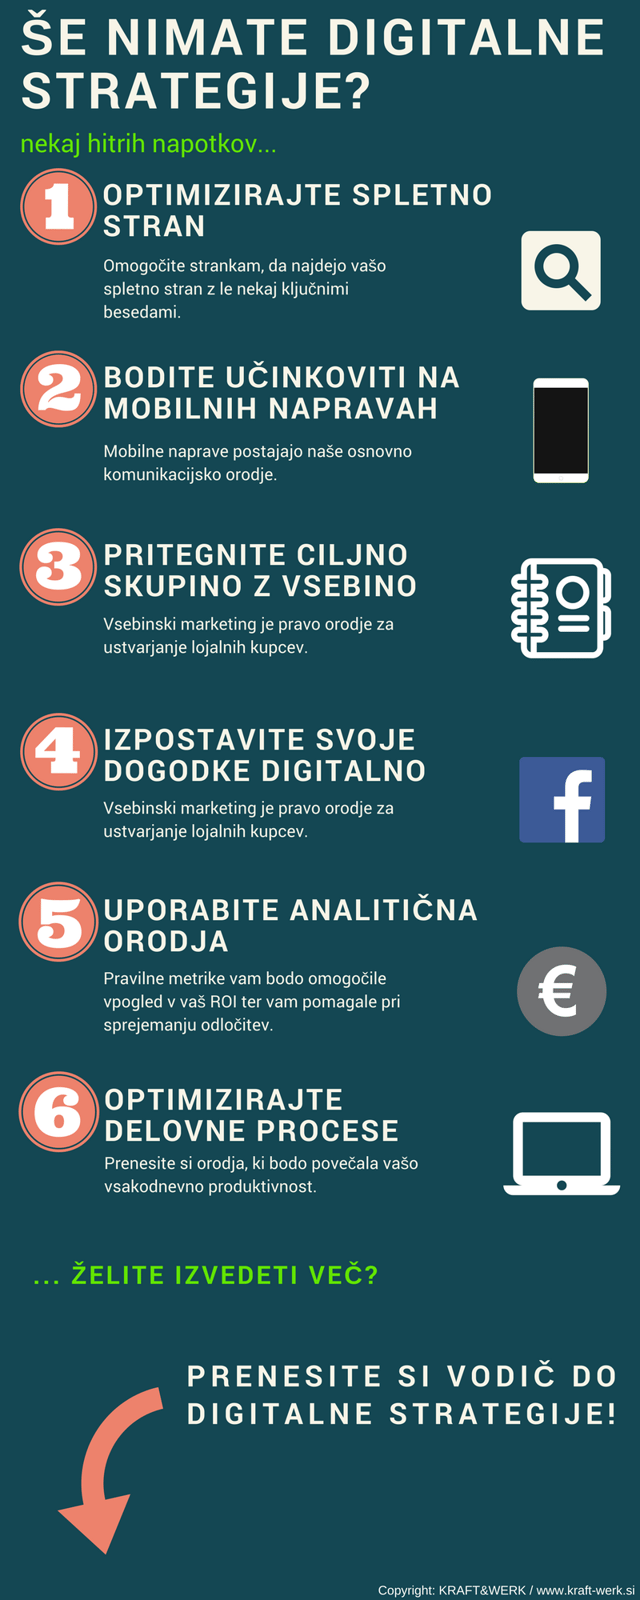 BLOG-8 dejstev o digitalnih veščinah in ekonomiji v Sloveniji - INFOGRAFIKA 3.png